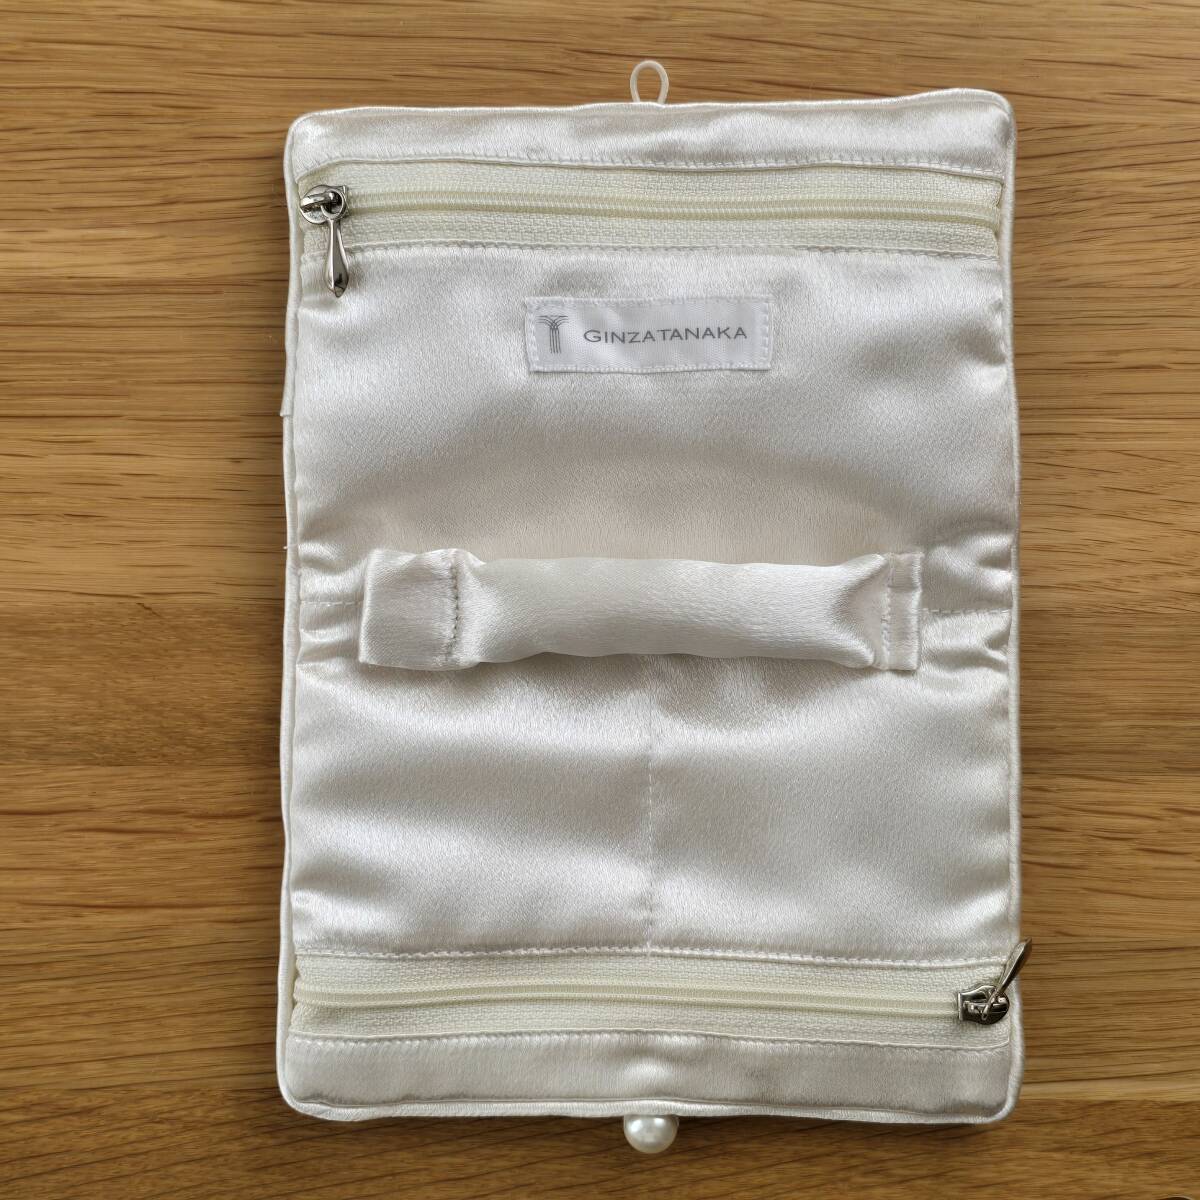  аксессуары сумка ювелирные изделия сумка мобильный GINZA TANAKA праздничные обряды жемчуг аксессуары 